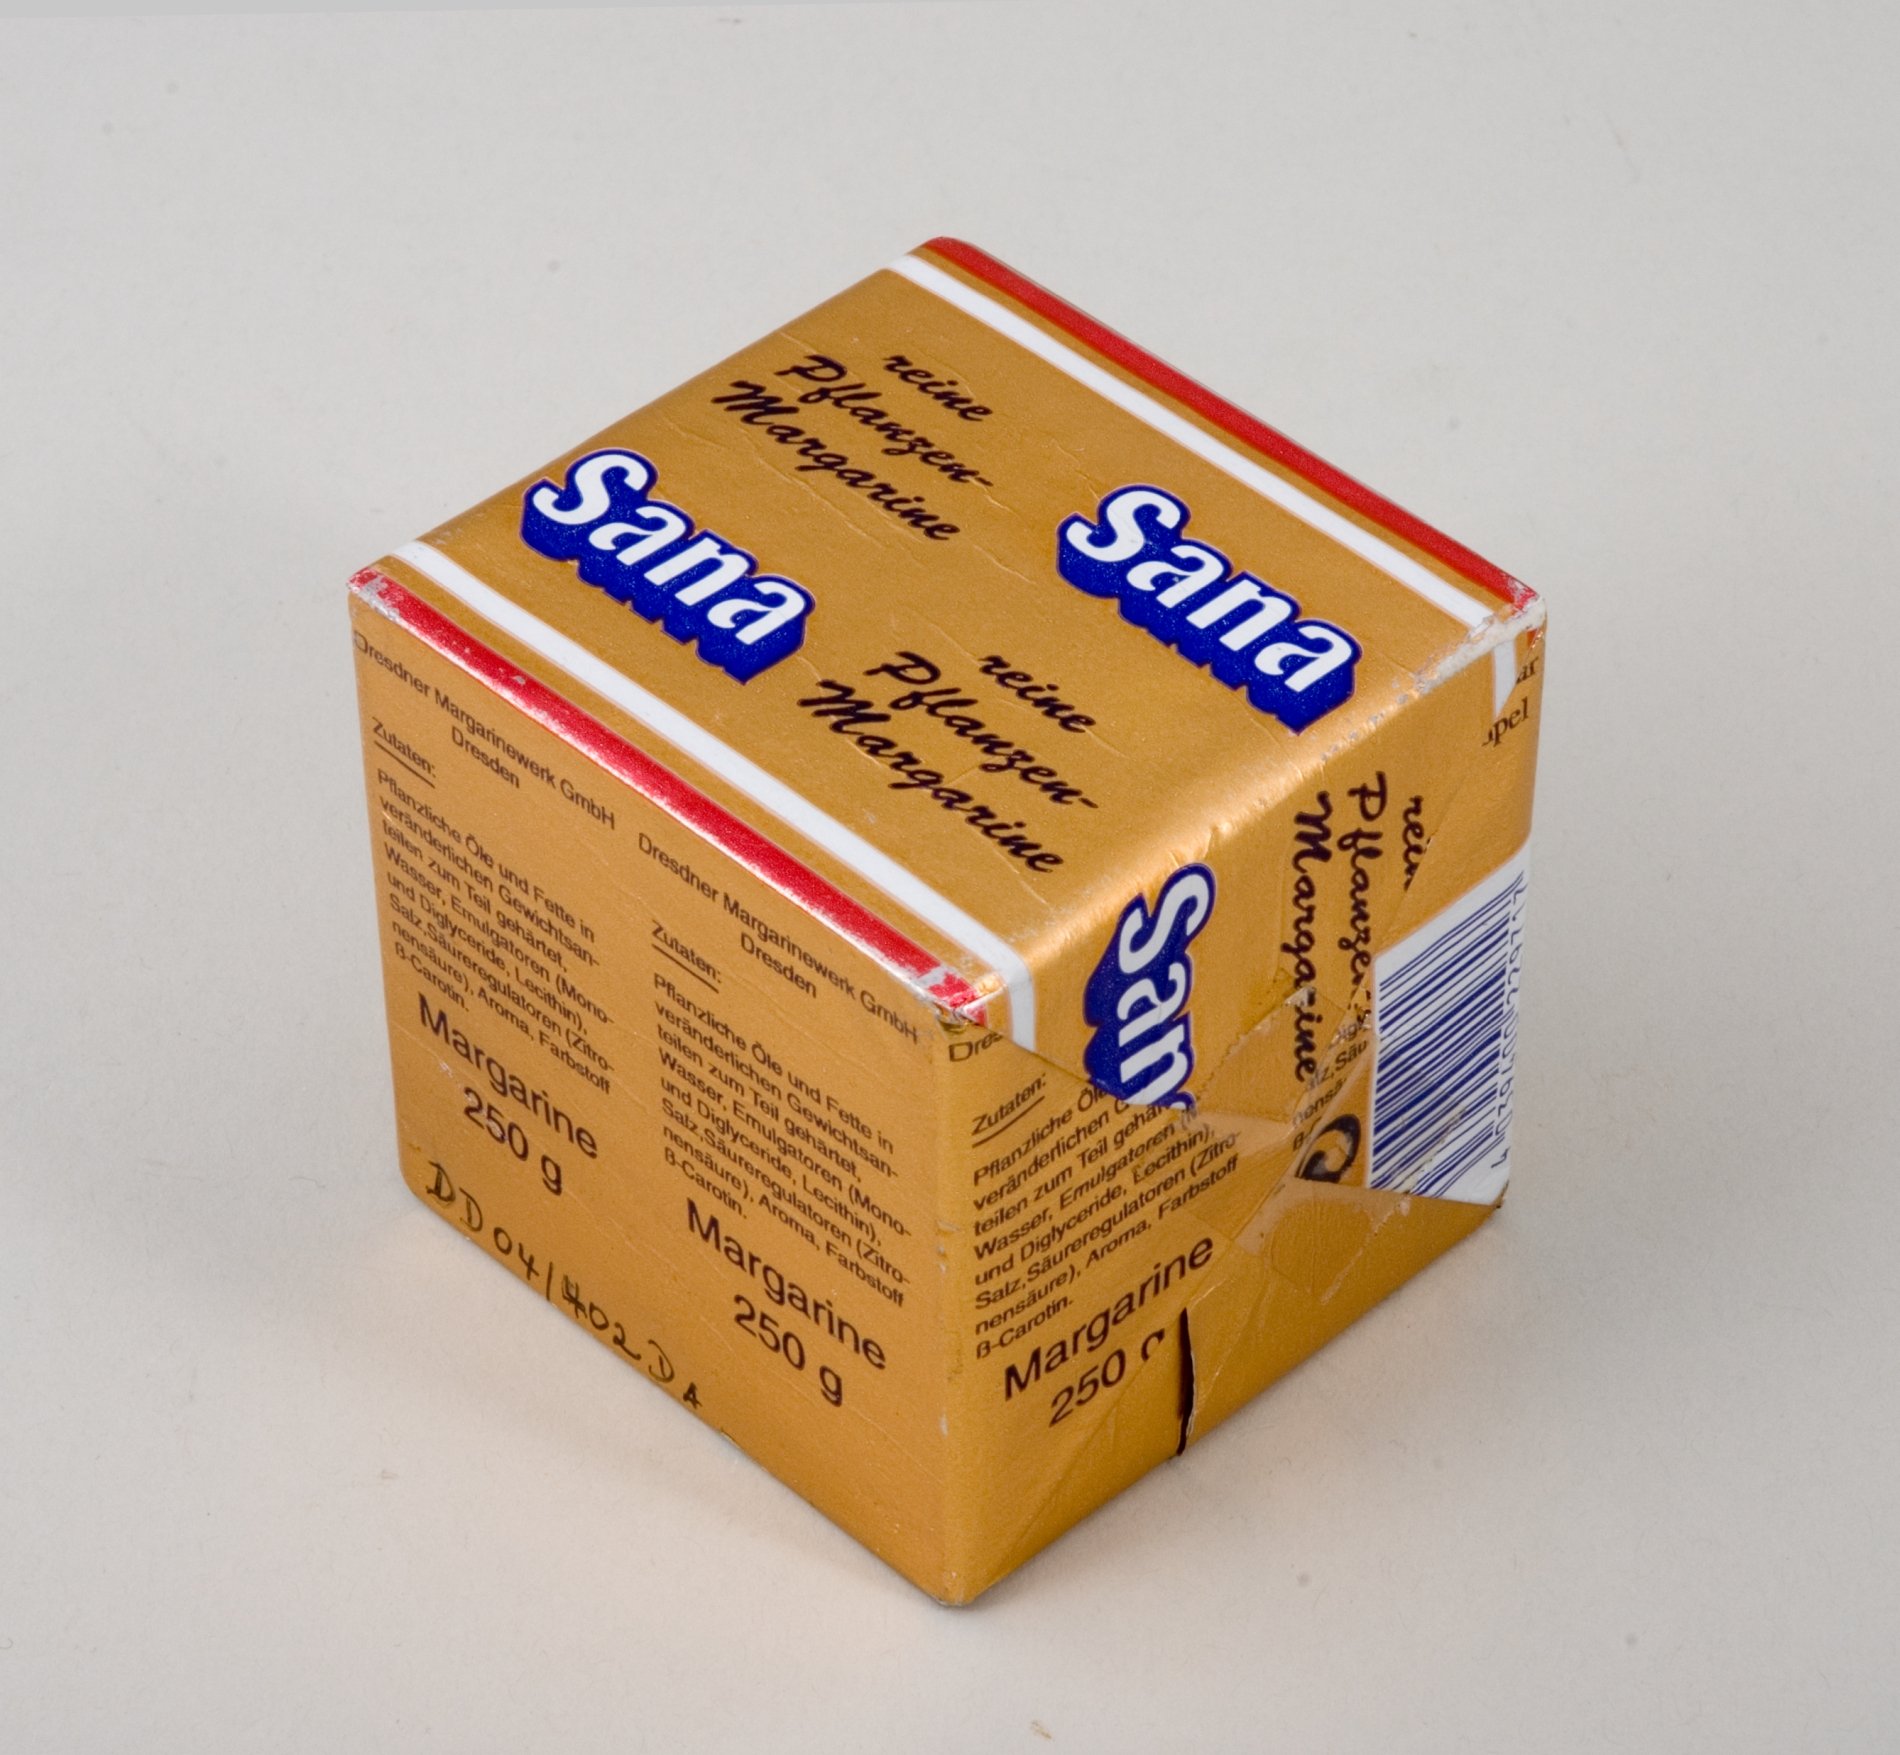 Verpackungs Entwurf - Sana Margarine - der Firma "Reichelt" (Stiftung Domäne Dahlem - Landgut und Museum, Weiternutzung nur mit Genehmigung des Museums CC BY-NC-SA)